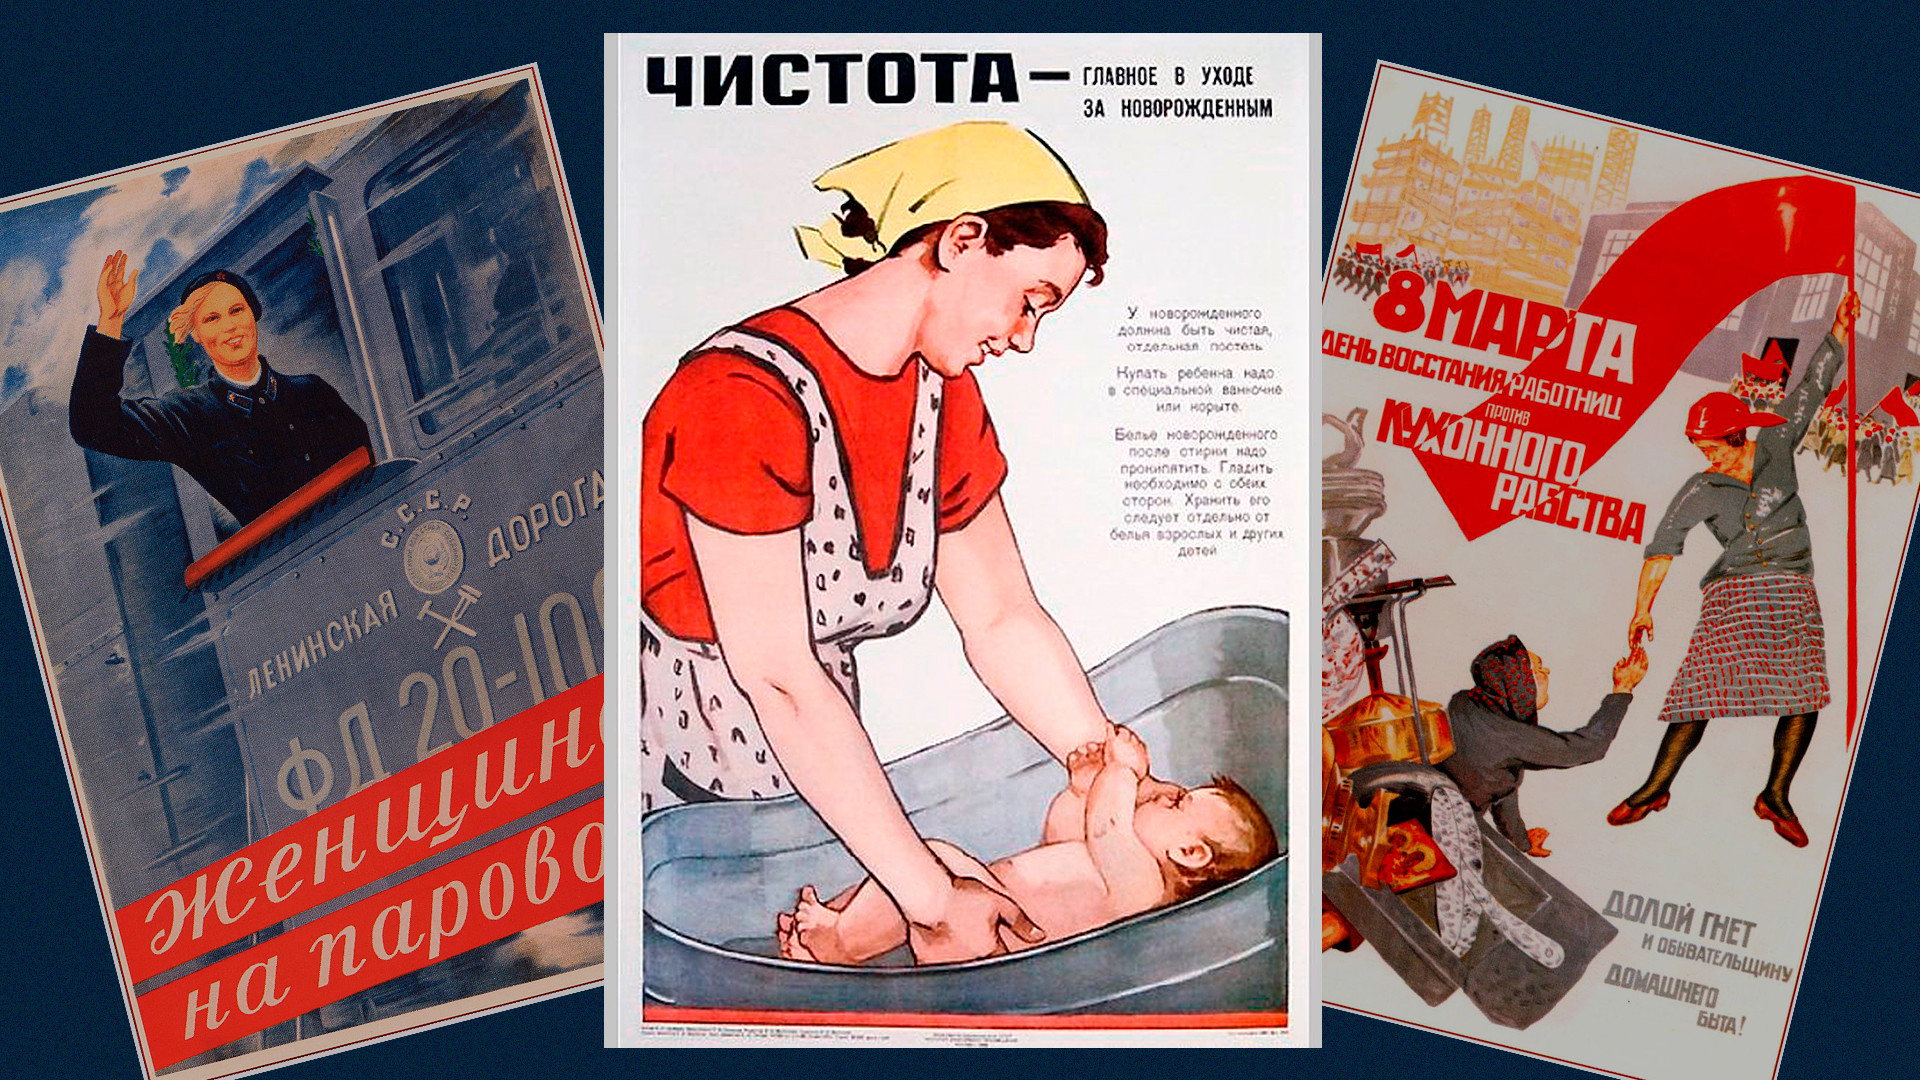 Плакат наглядной агитации. Советские плакаты. Агитационные плакаты СССР. Советские плакаты про женщин. Советские плакаты Женищнам.